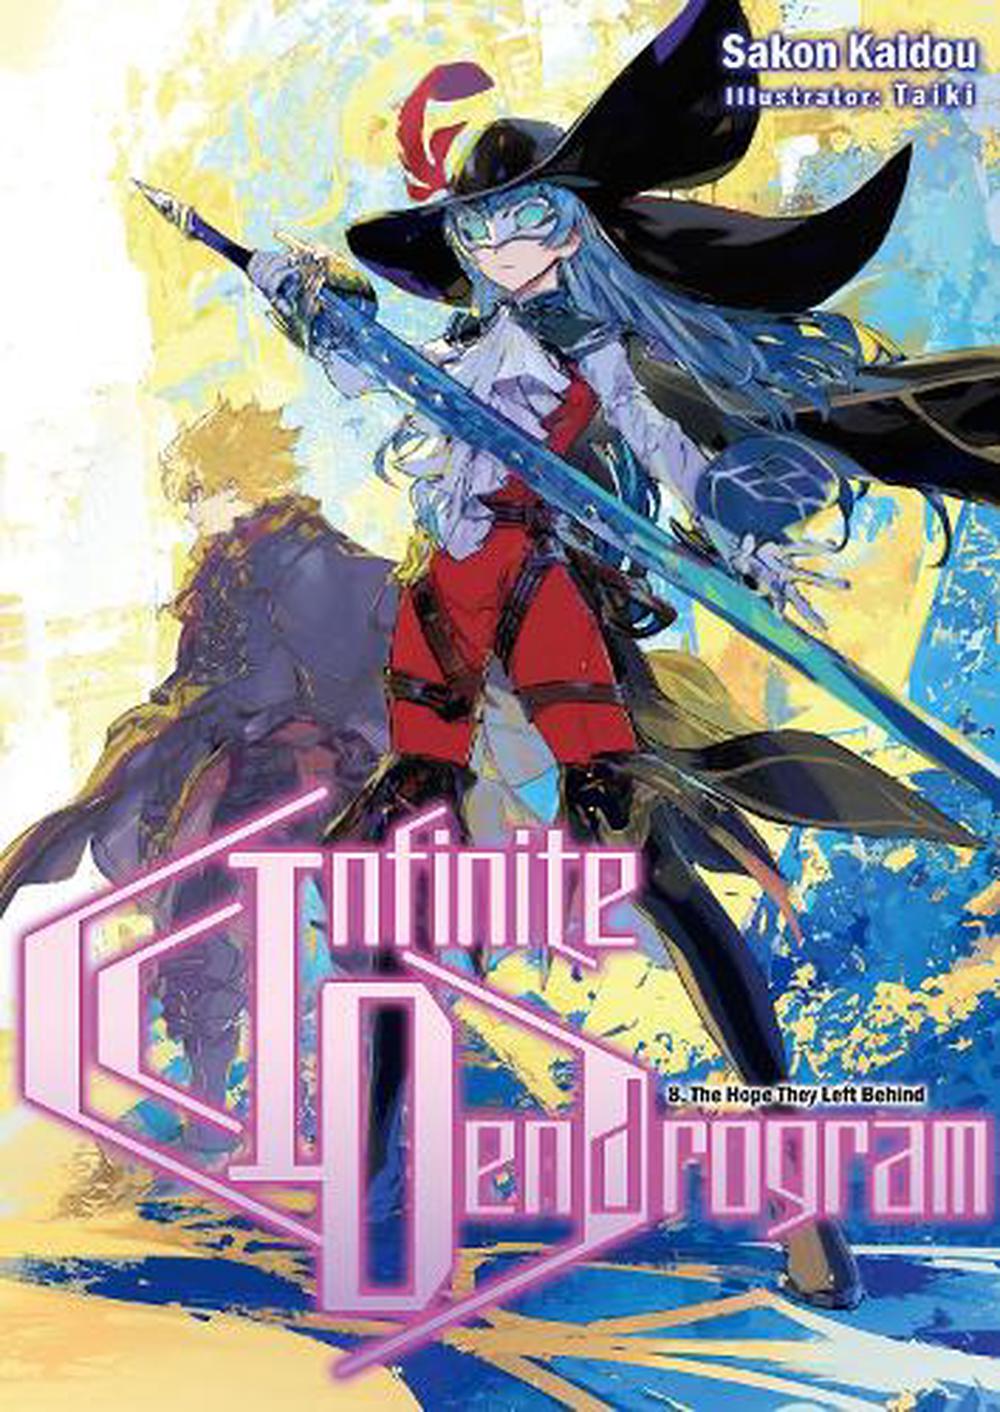 Infinite Dendrogram (Manga Version) Volume 6 ebook by Sakon Kaidou -  Rakuten Kobo